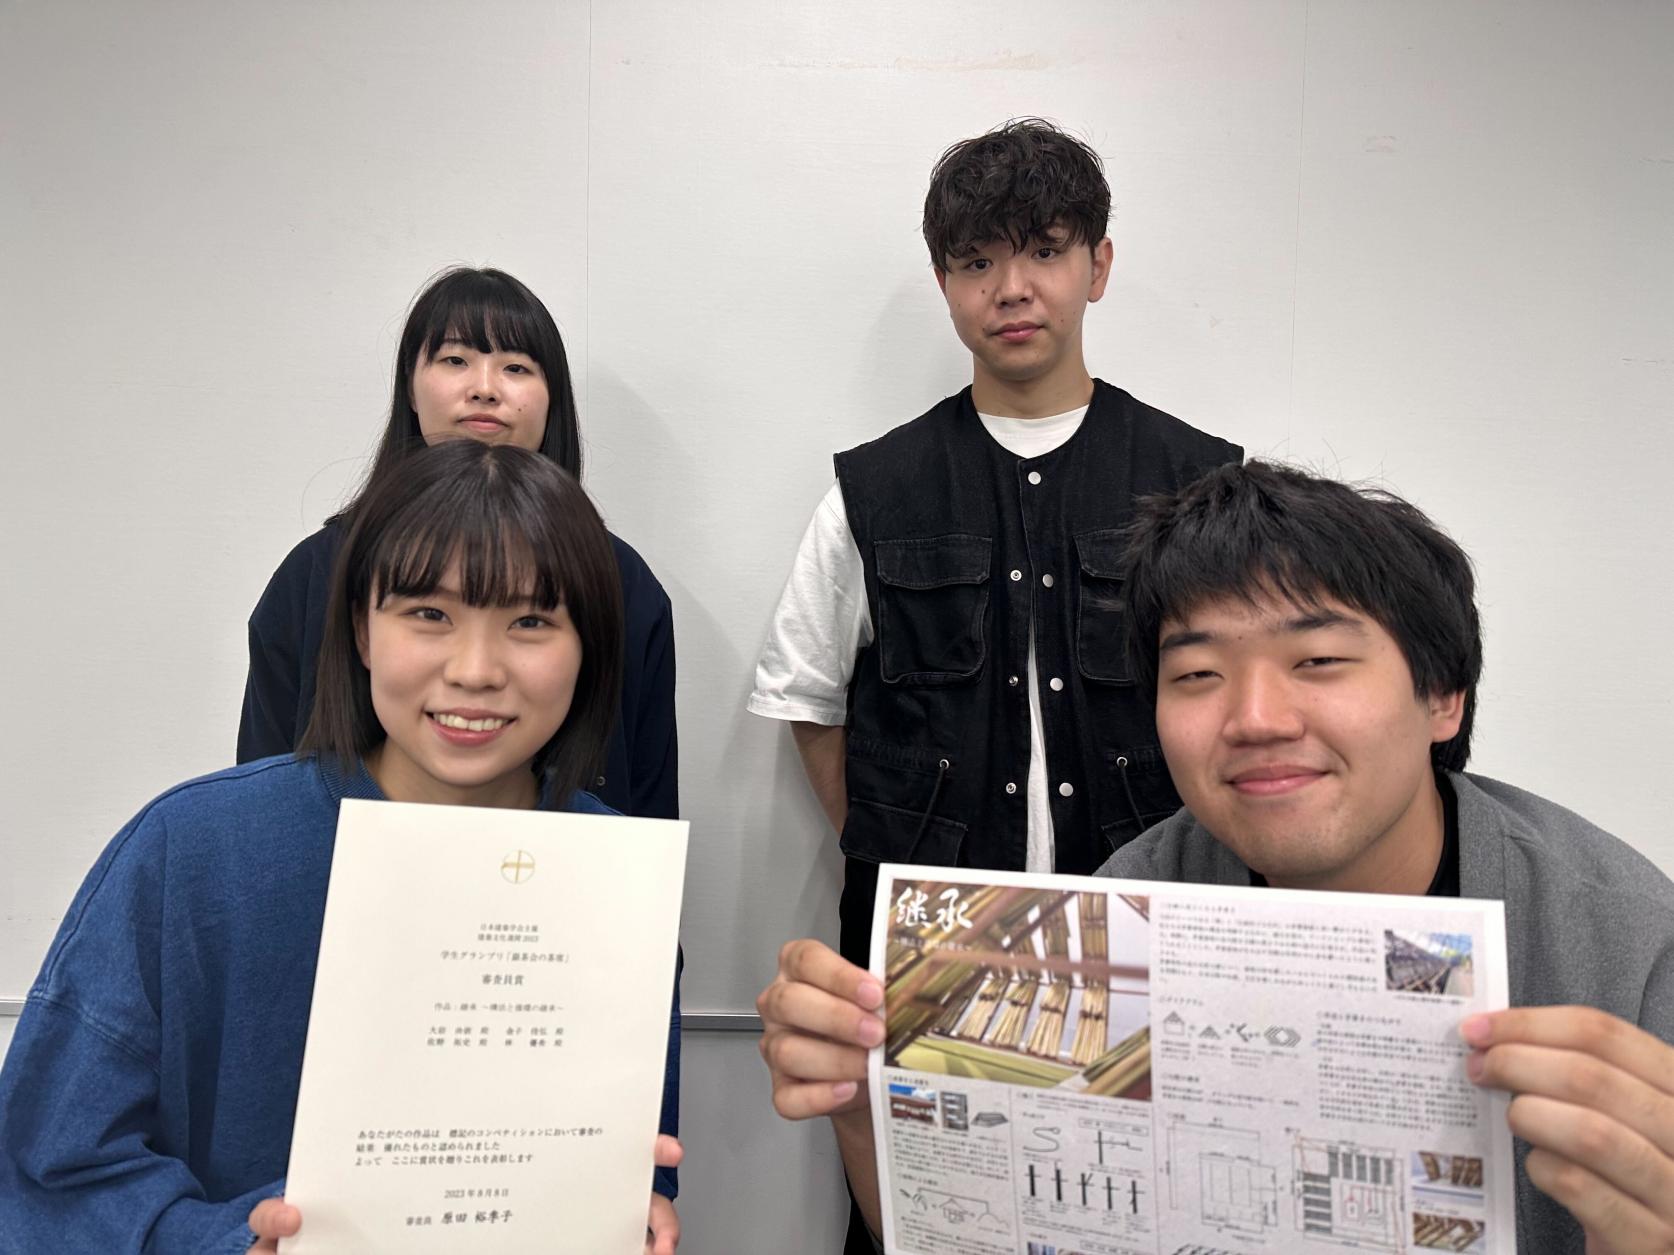 建築学科4年 大岩由依さん、金子佳弘さん、佐野拓史さんと建築学専攻博士前期課程1年 林優希さんが「学生グランプリ2023 銀茶会の茶席」にて審査員賞を受賞しました。